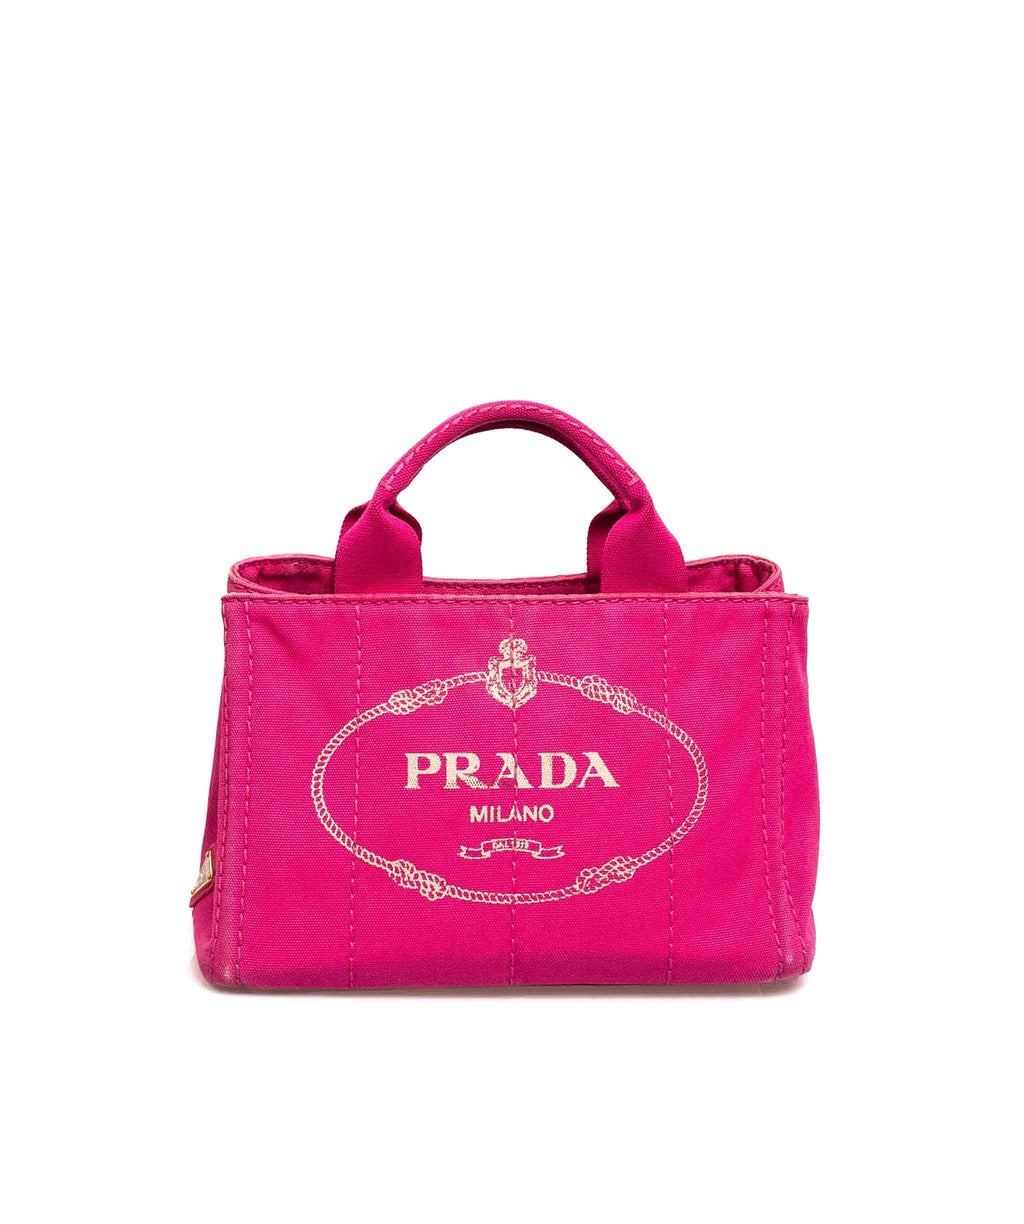 Prada Canapa Pink Tote Bag with Strap - AWL1930